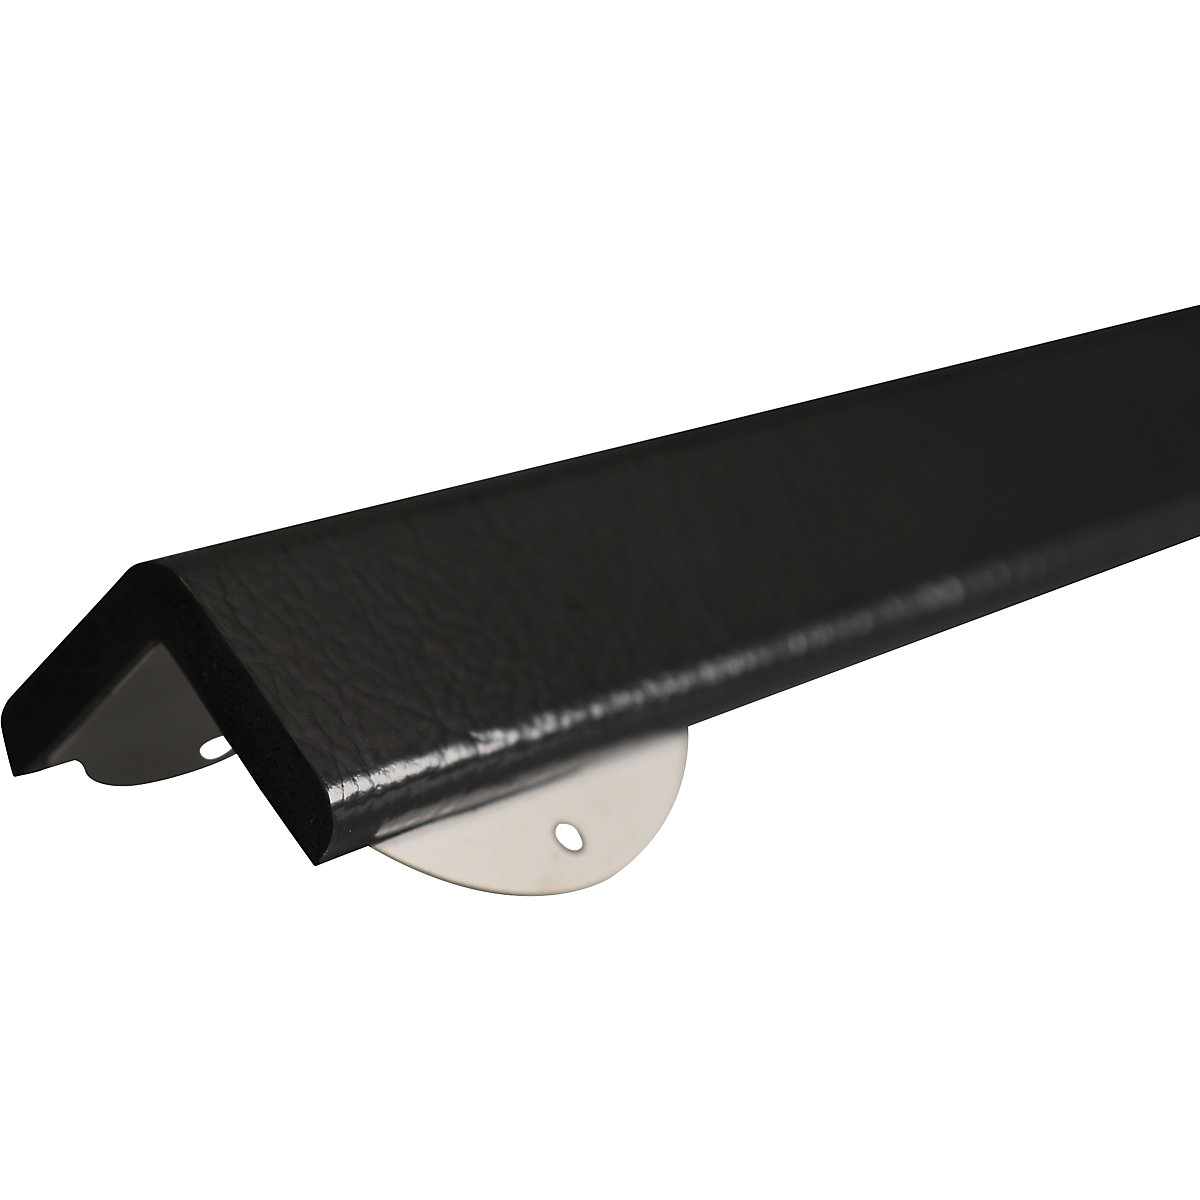 Protection des coins Knuffi® avec rail de montage – SHG, type H+, pièce de 1 m, noir